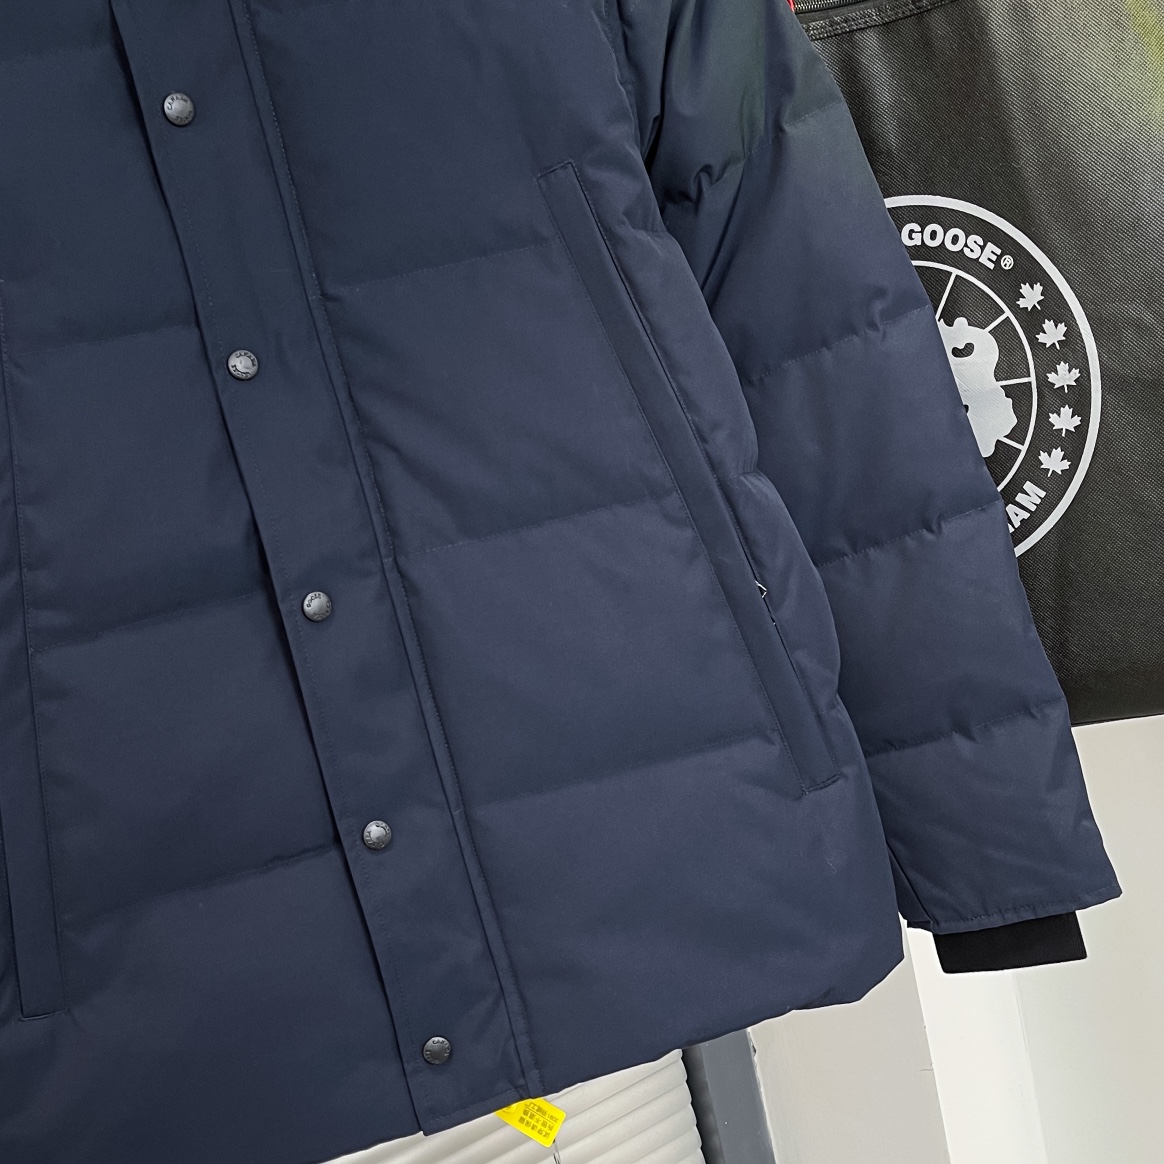 カナダグース軽量ダウンコート高級 ファッションダウンジャケット冬物人気ブランドブラック_4